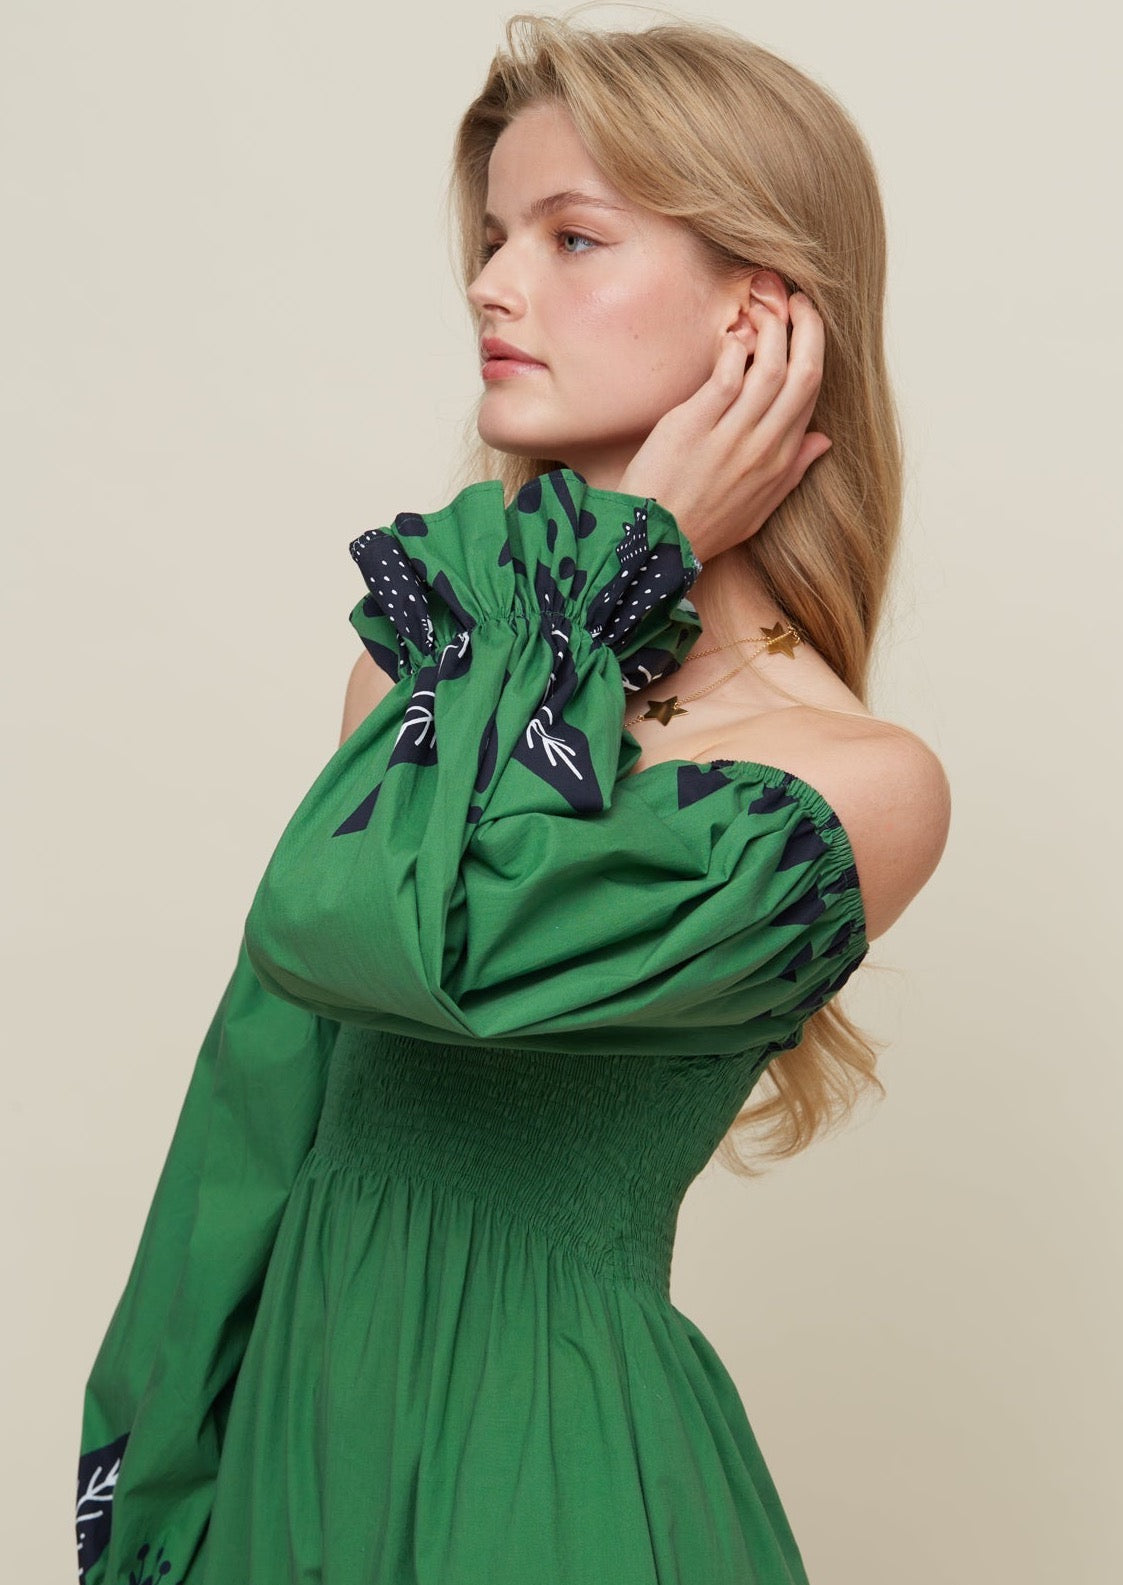 Galeria-Hortencia Floresta Green Dress-Justbrazil